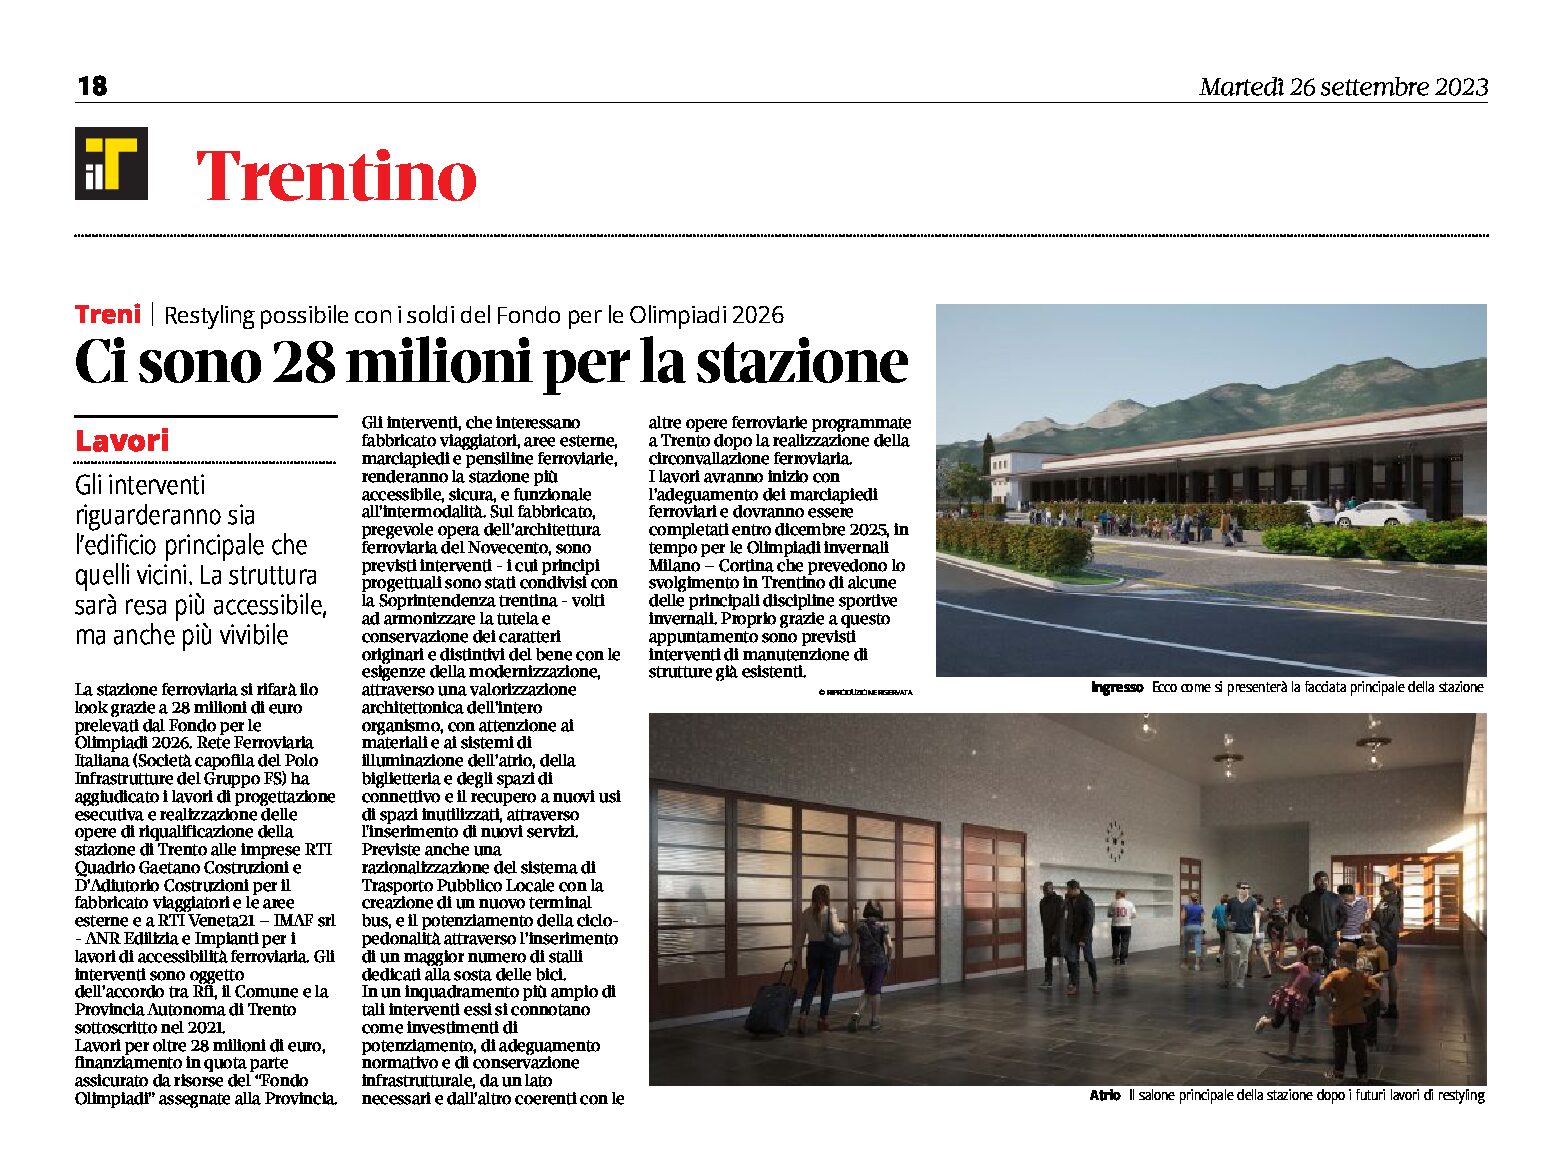 Trento, Stazione treni: restyling possibile con 28 milioni del Fondo per le Olimpiadi 2026